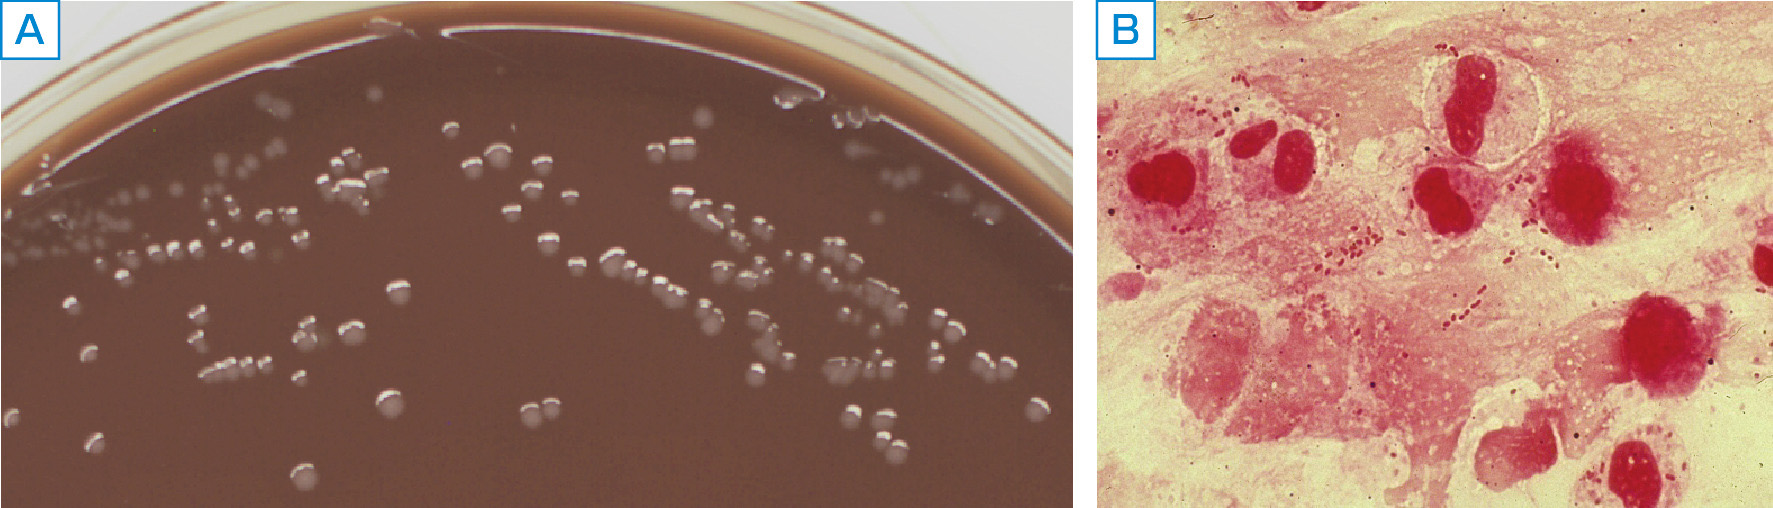 ⓔ図7-3-8　インフルエンザ菌のコロニー外観とGram染色所見 A：チョコレート寒天培地上のコロニー外観，B：Gram染色所見．